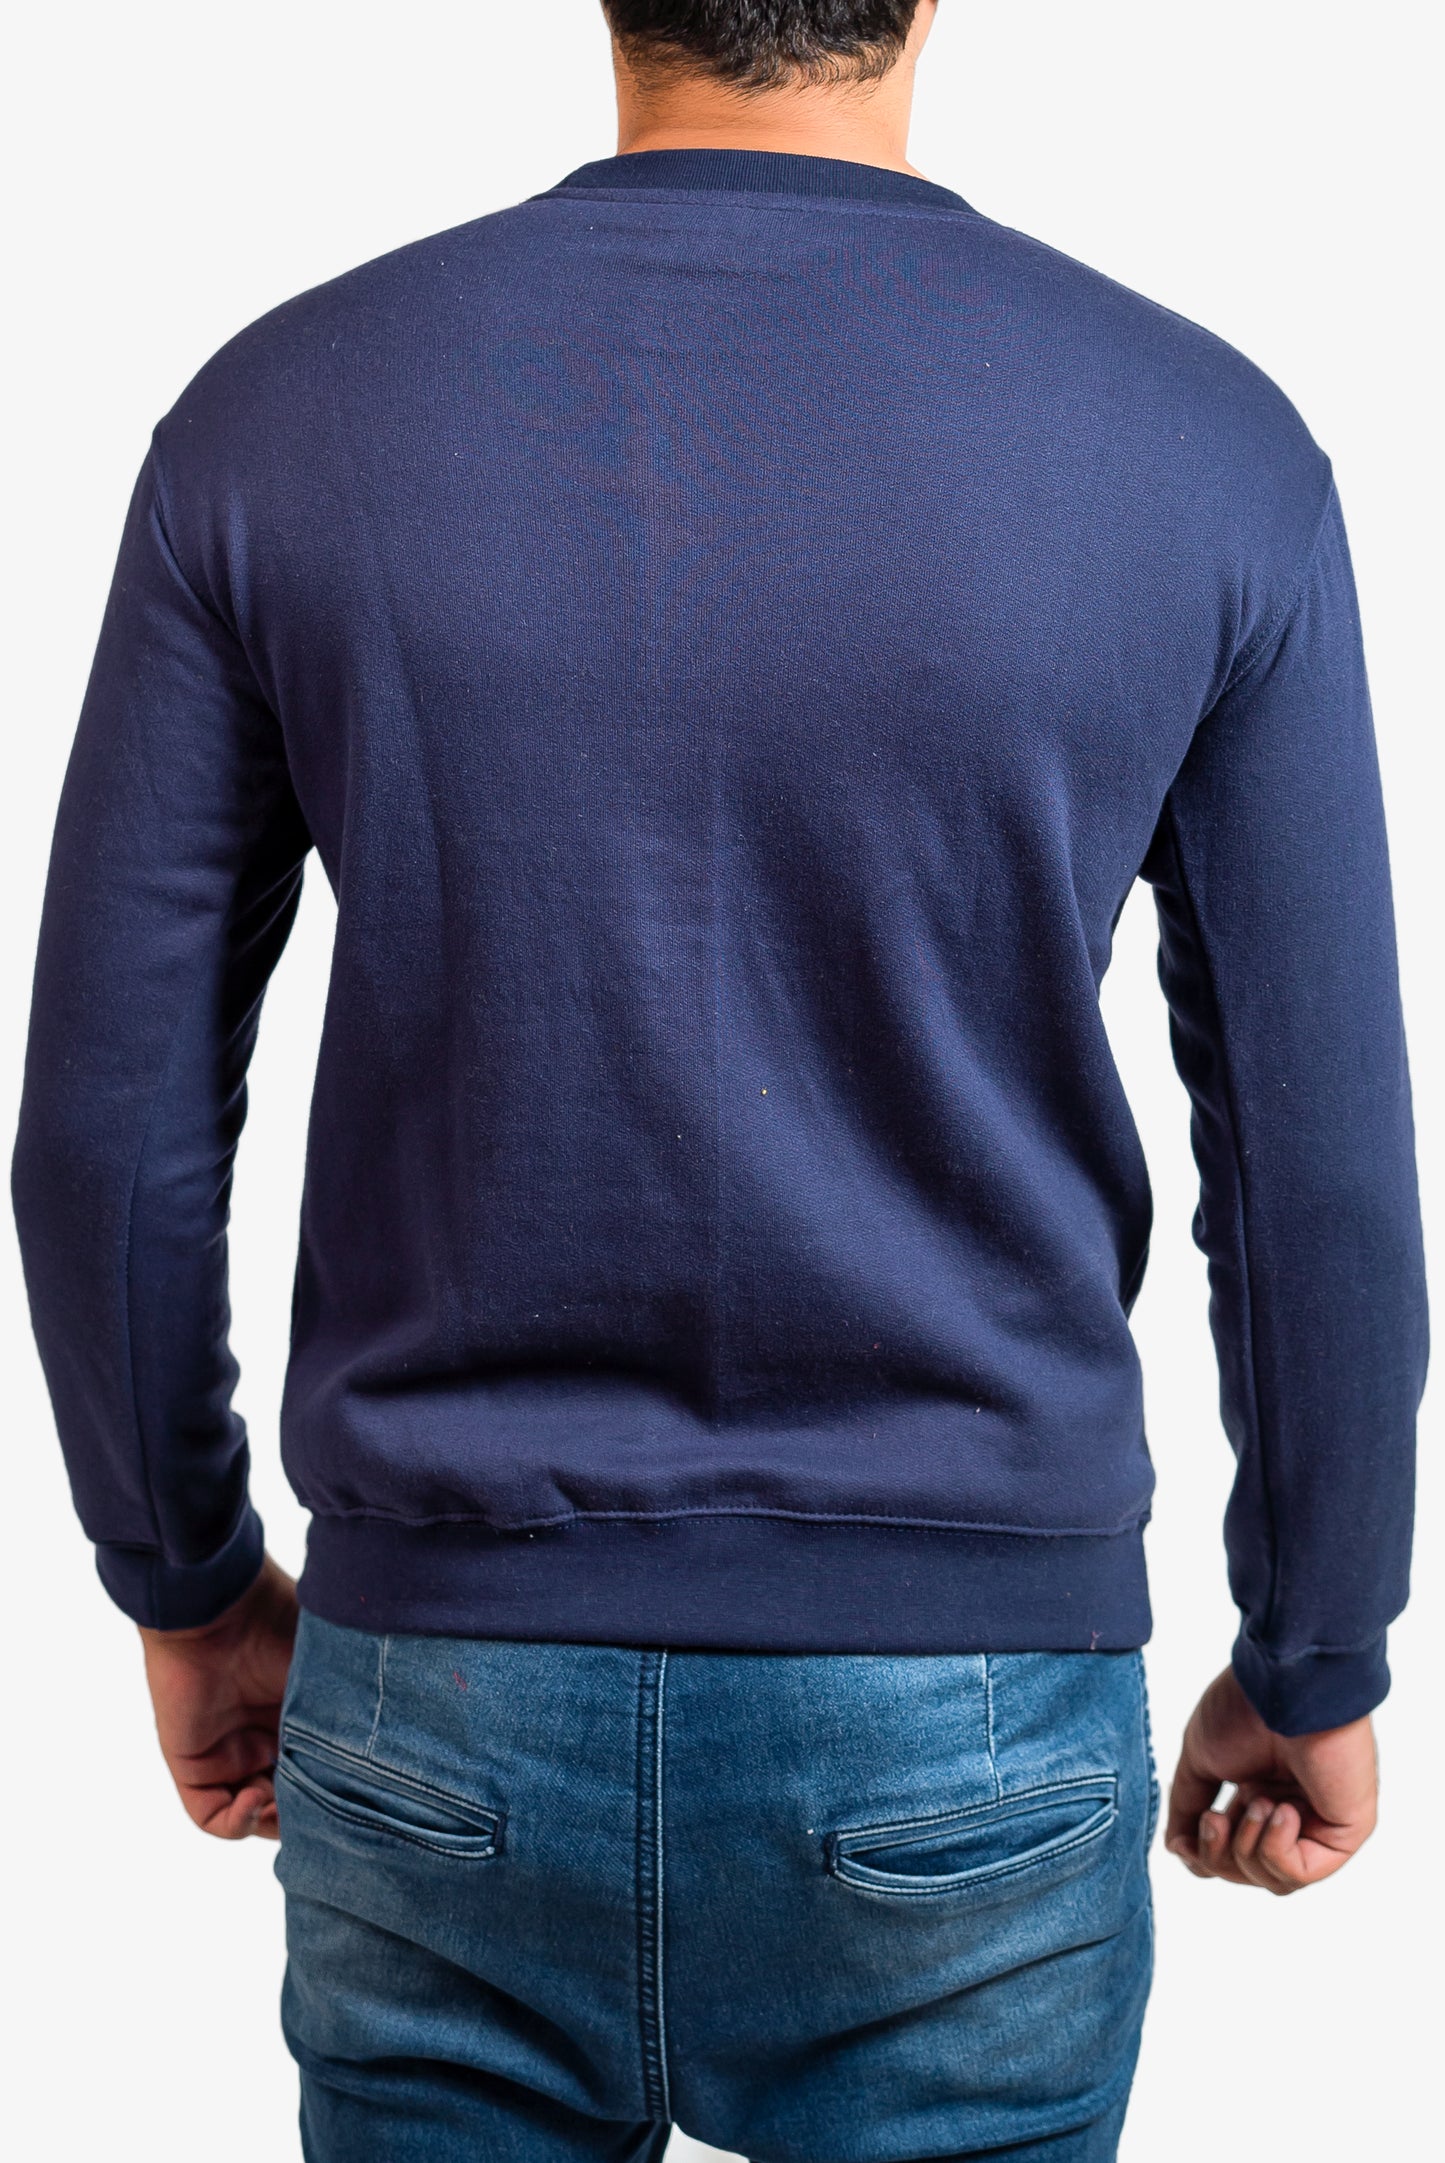 Basic Dark Blue Sweatshirt // Men - teehoodie.co